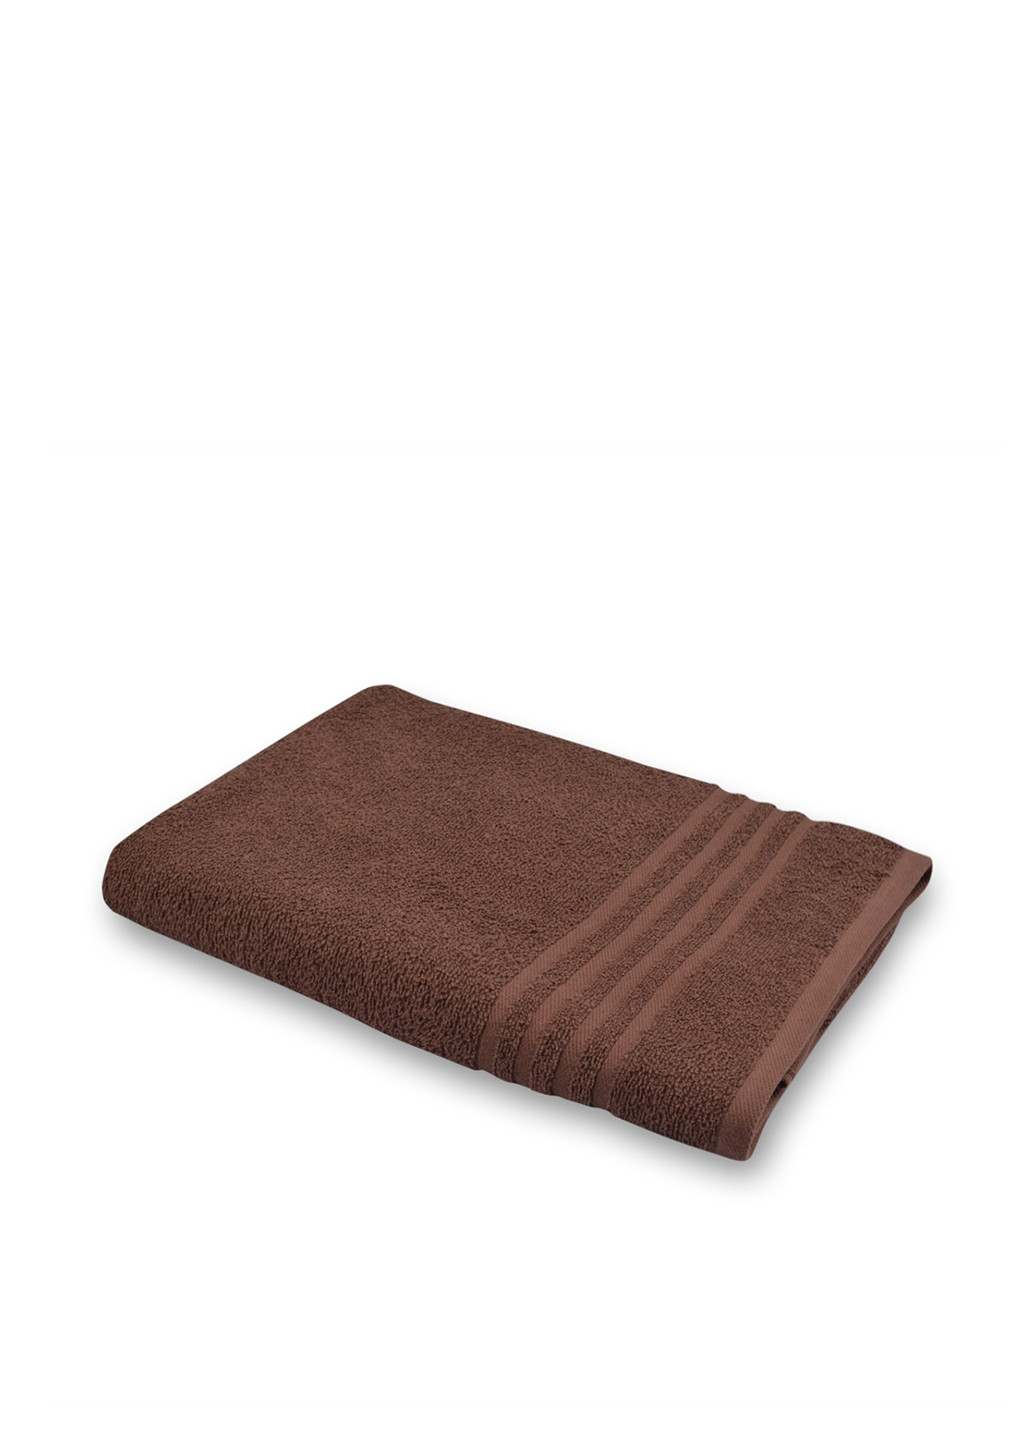 Home Line полотенце, 70х140 см однотонный коричневый производство - Индия